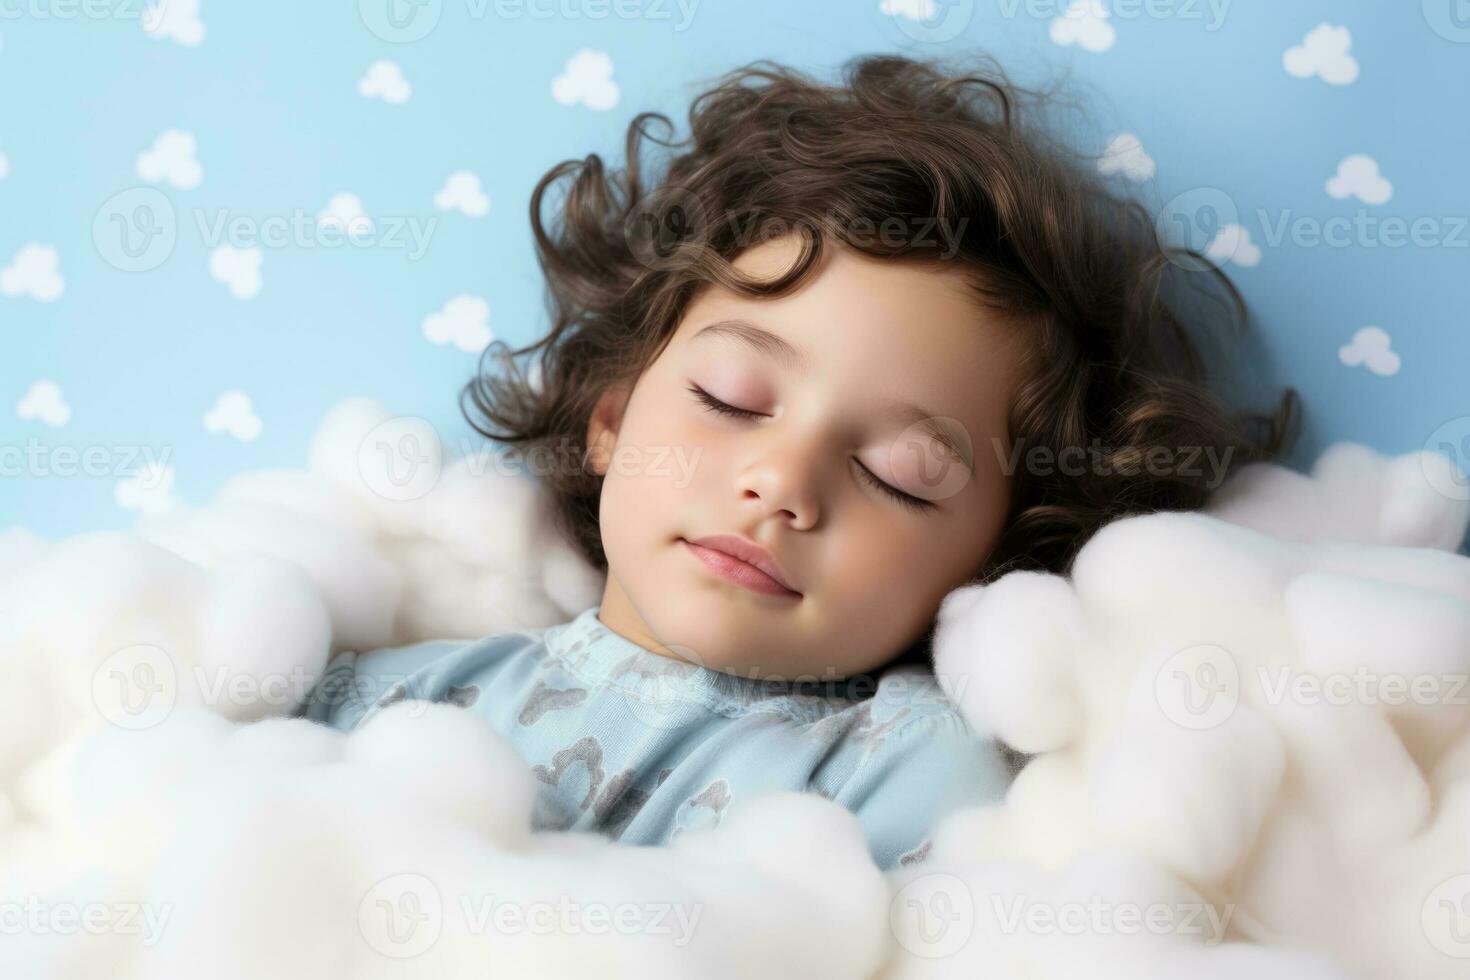 en barn lugnt sovande på en moln isolerat på en vit bakgrund foto